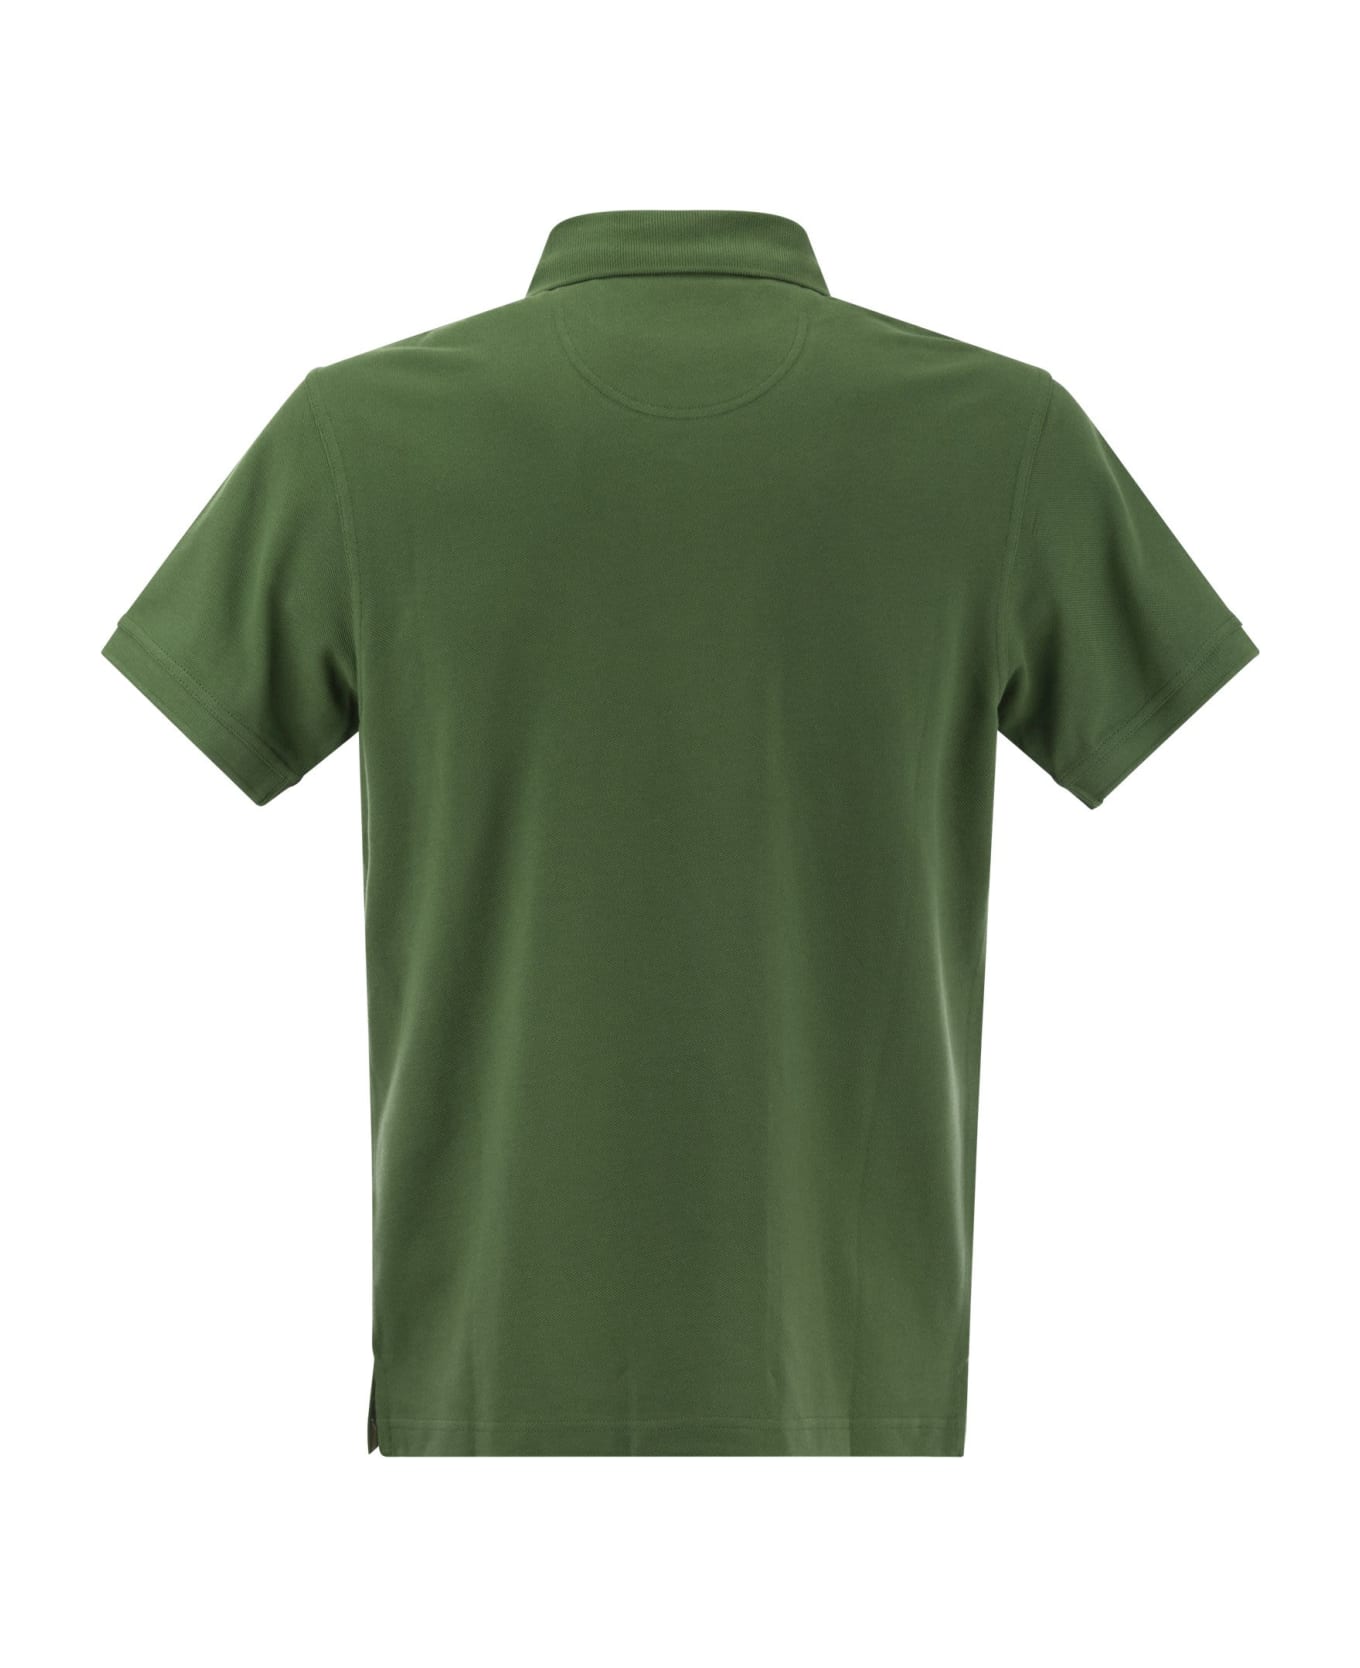 Barbour Tartan Pique Polo Shirt - Green